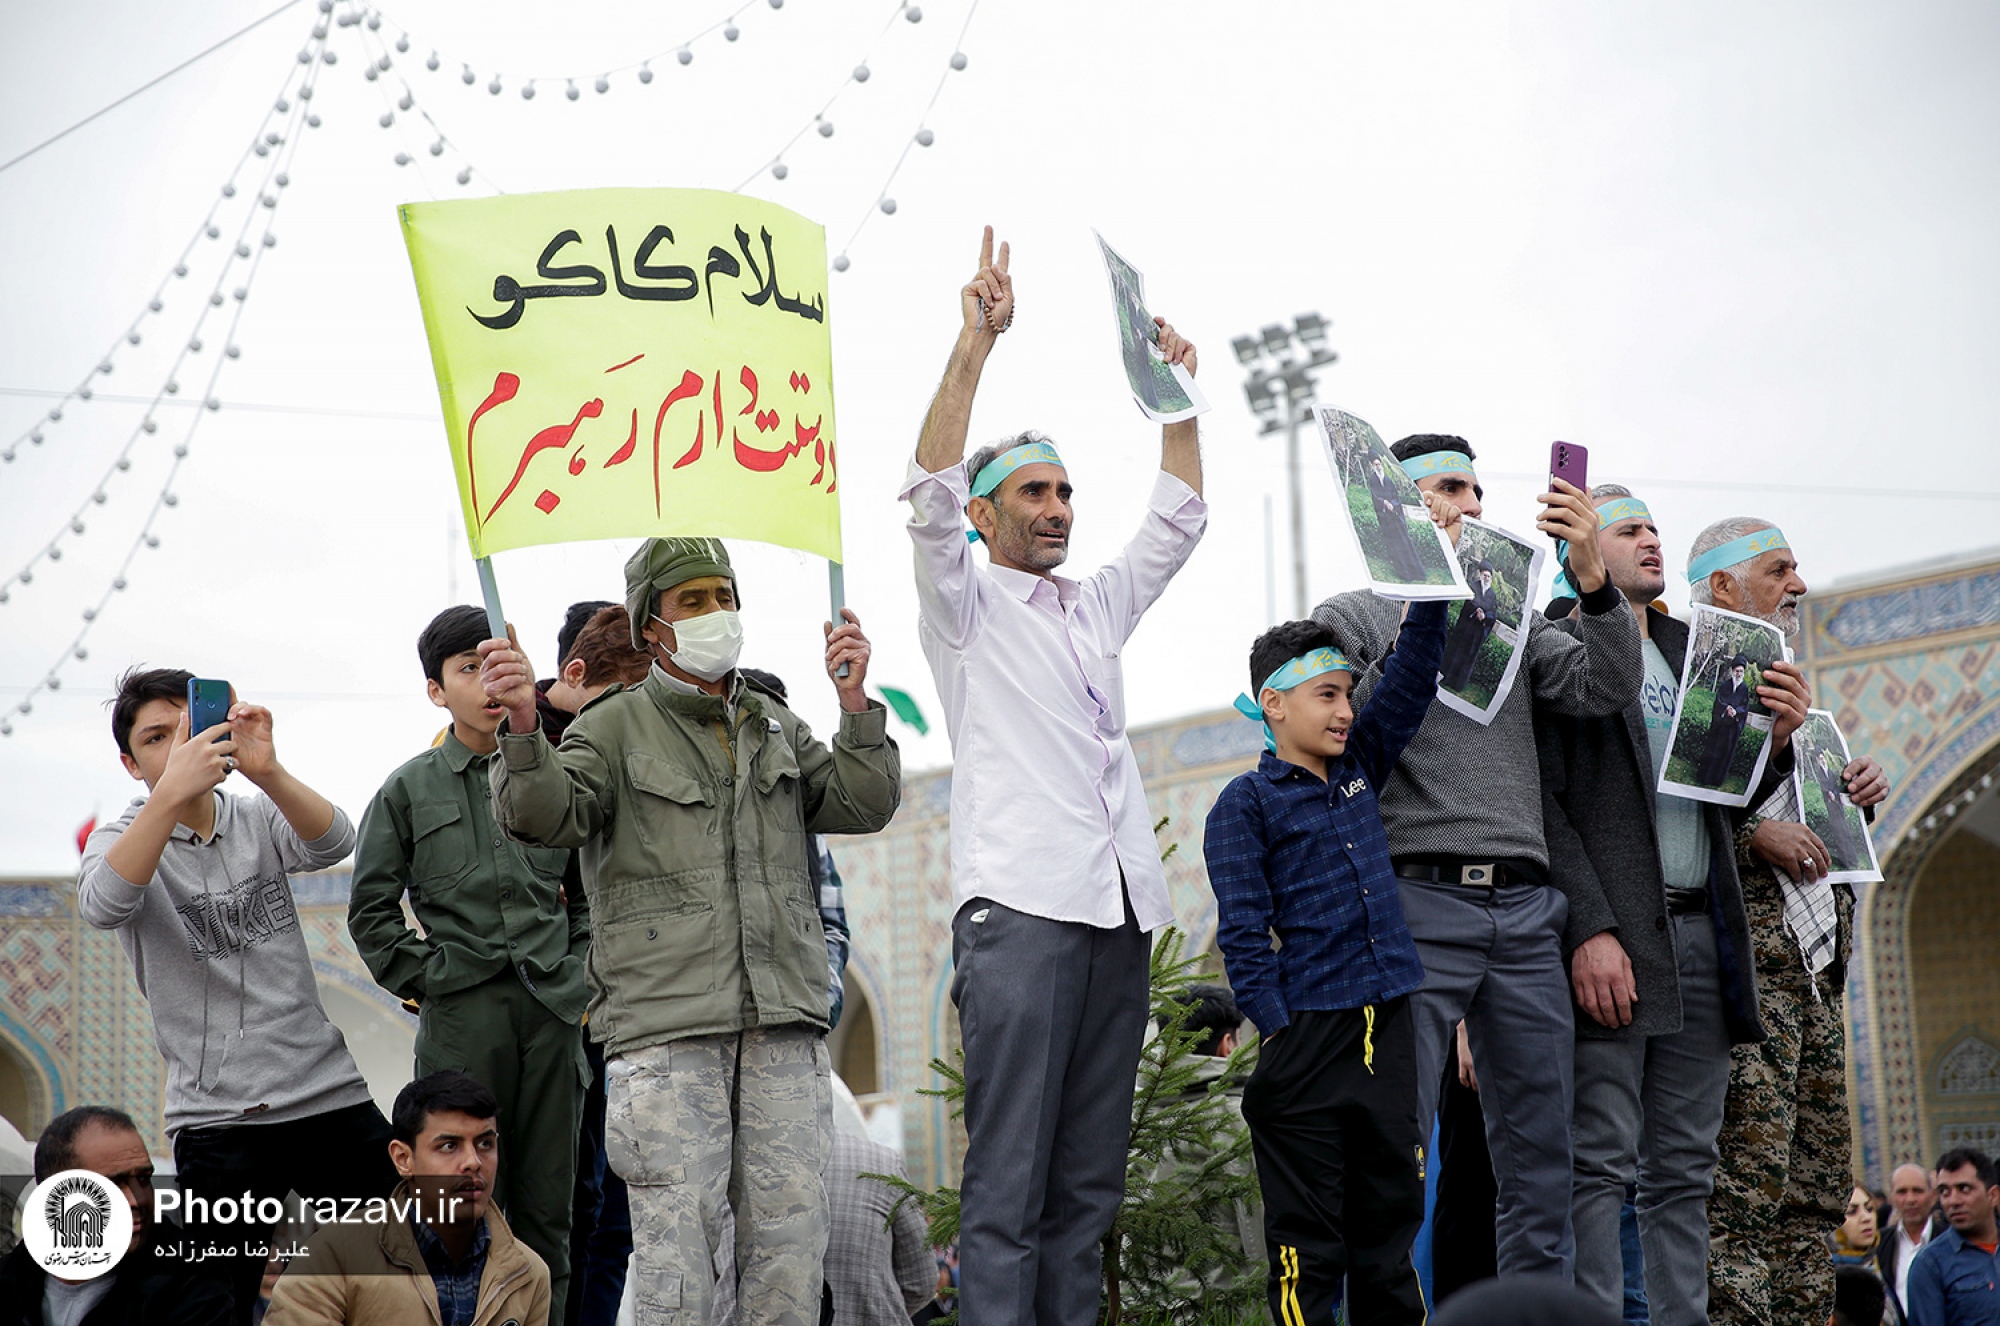 مراسم سخنرانی نوروزی رهبر معظم انقلاب اسلامی در حرم مطهر رضوی - 2